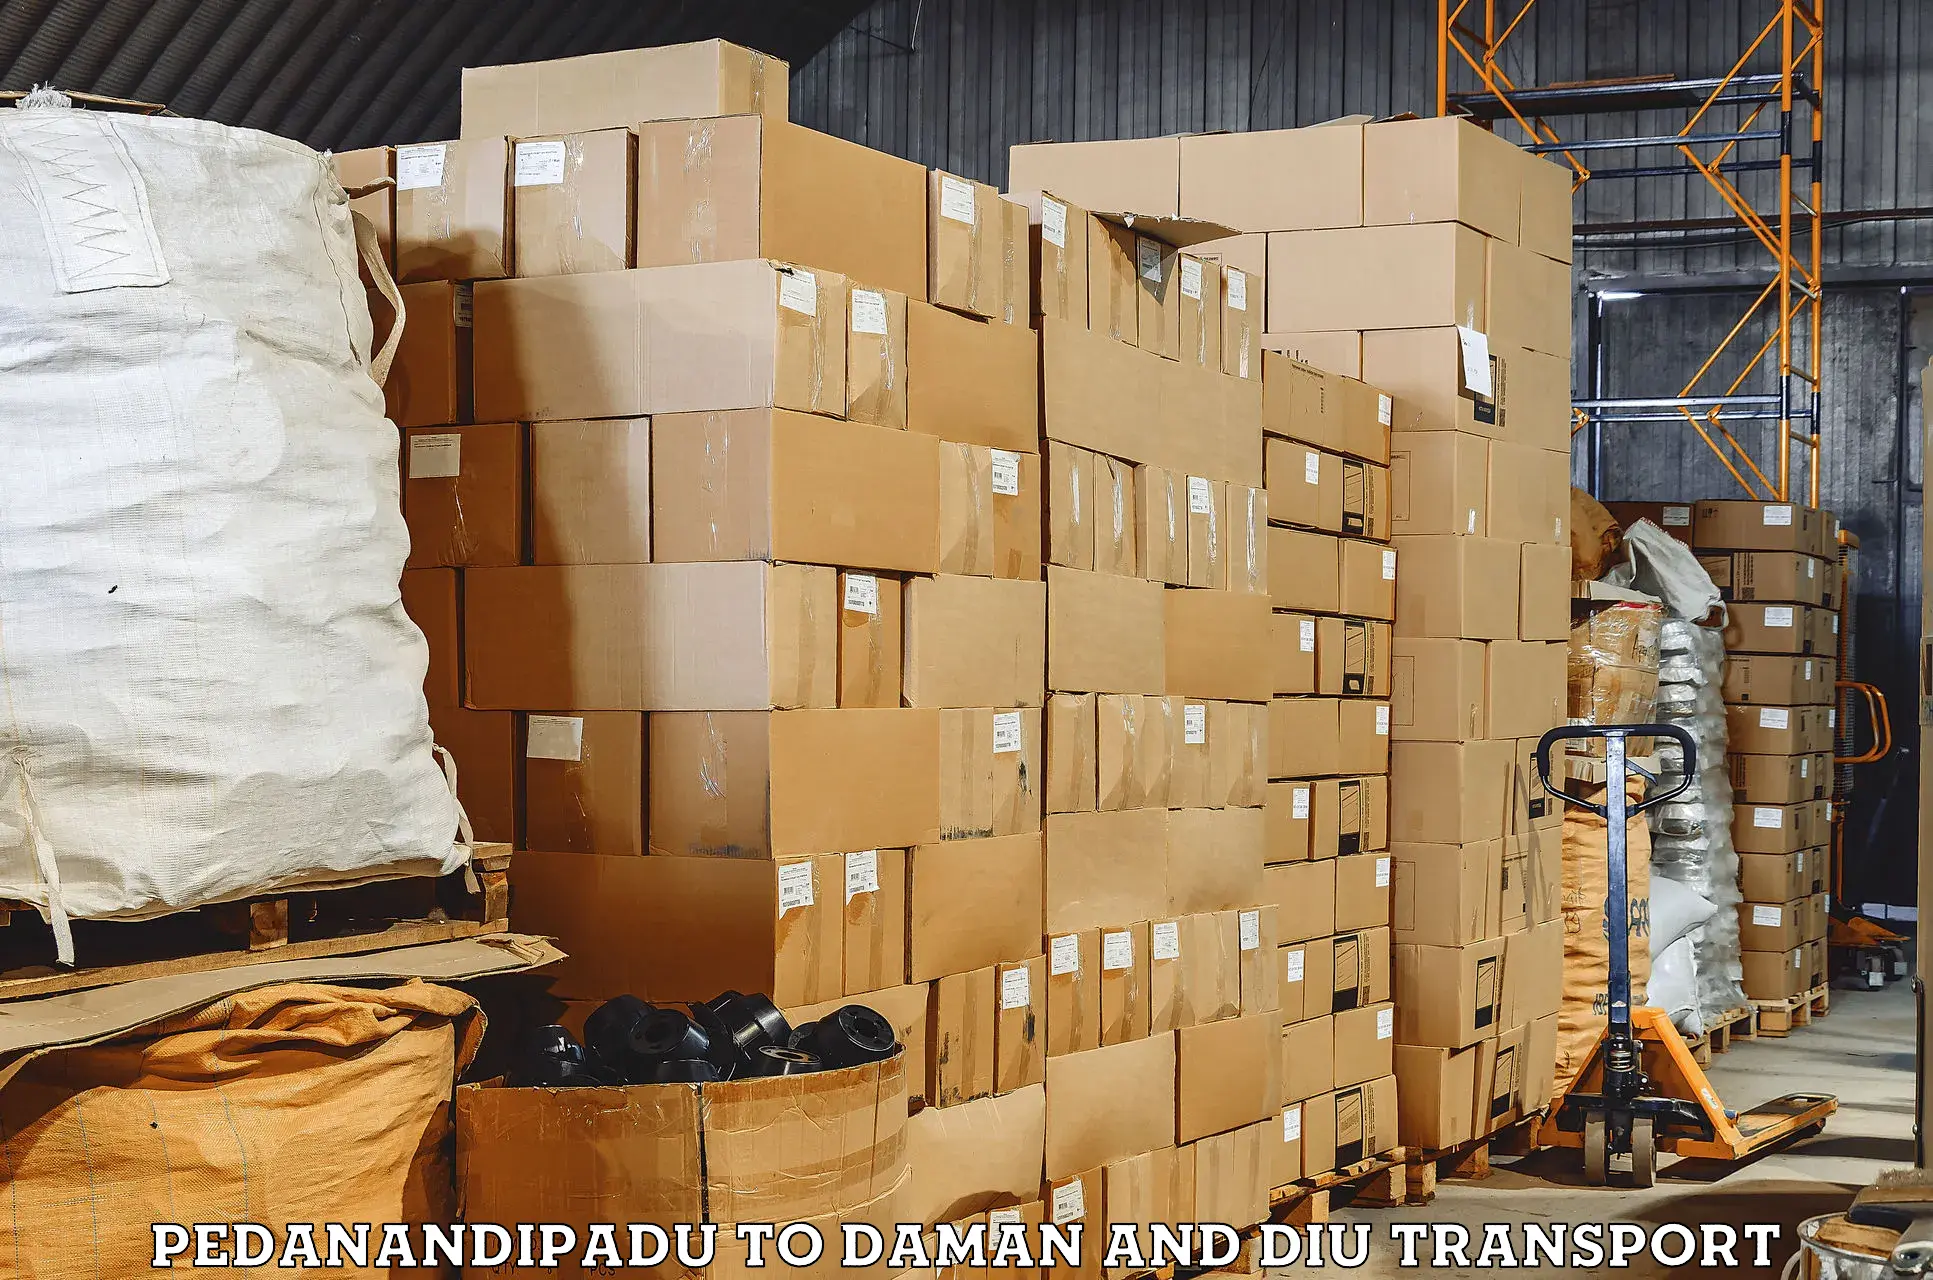 Furniture transport service Pedanandipadu to Daman and Diu